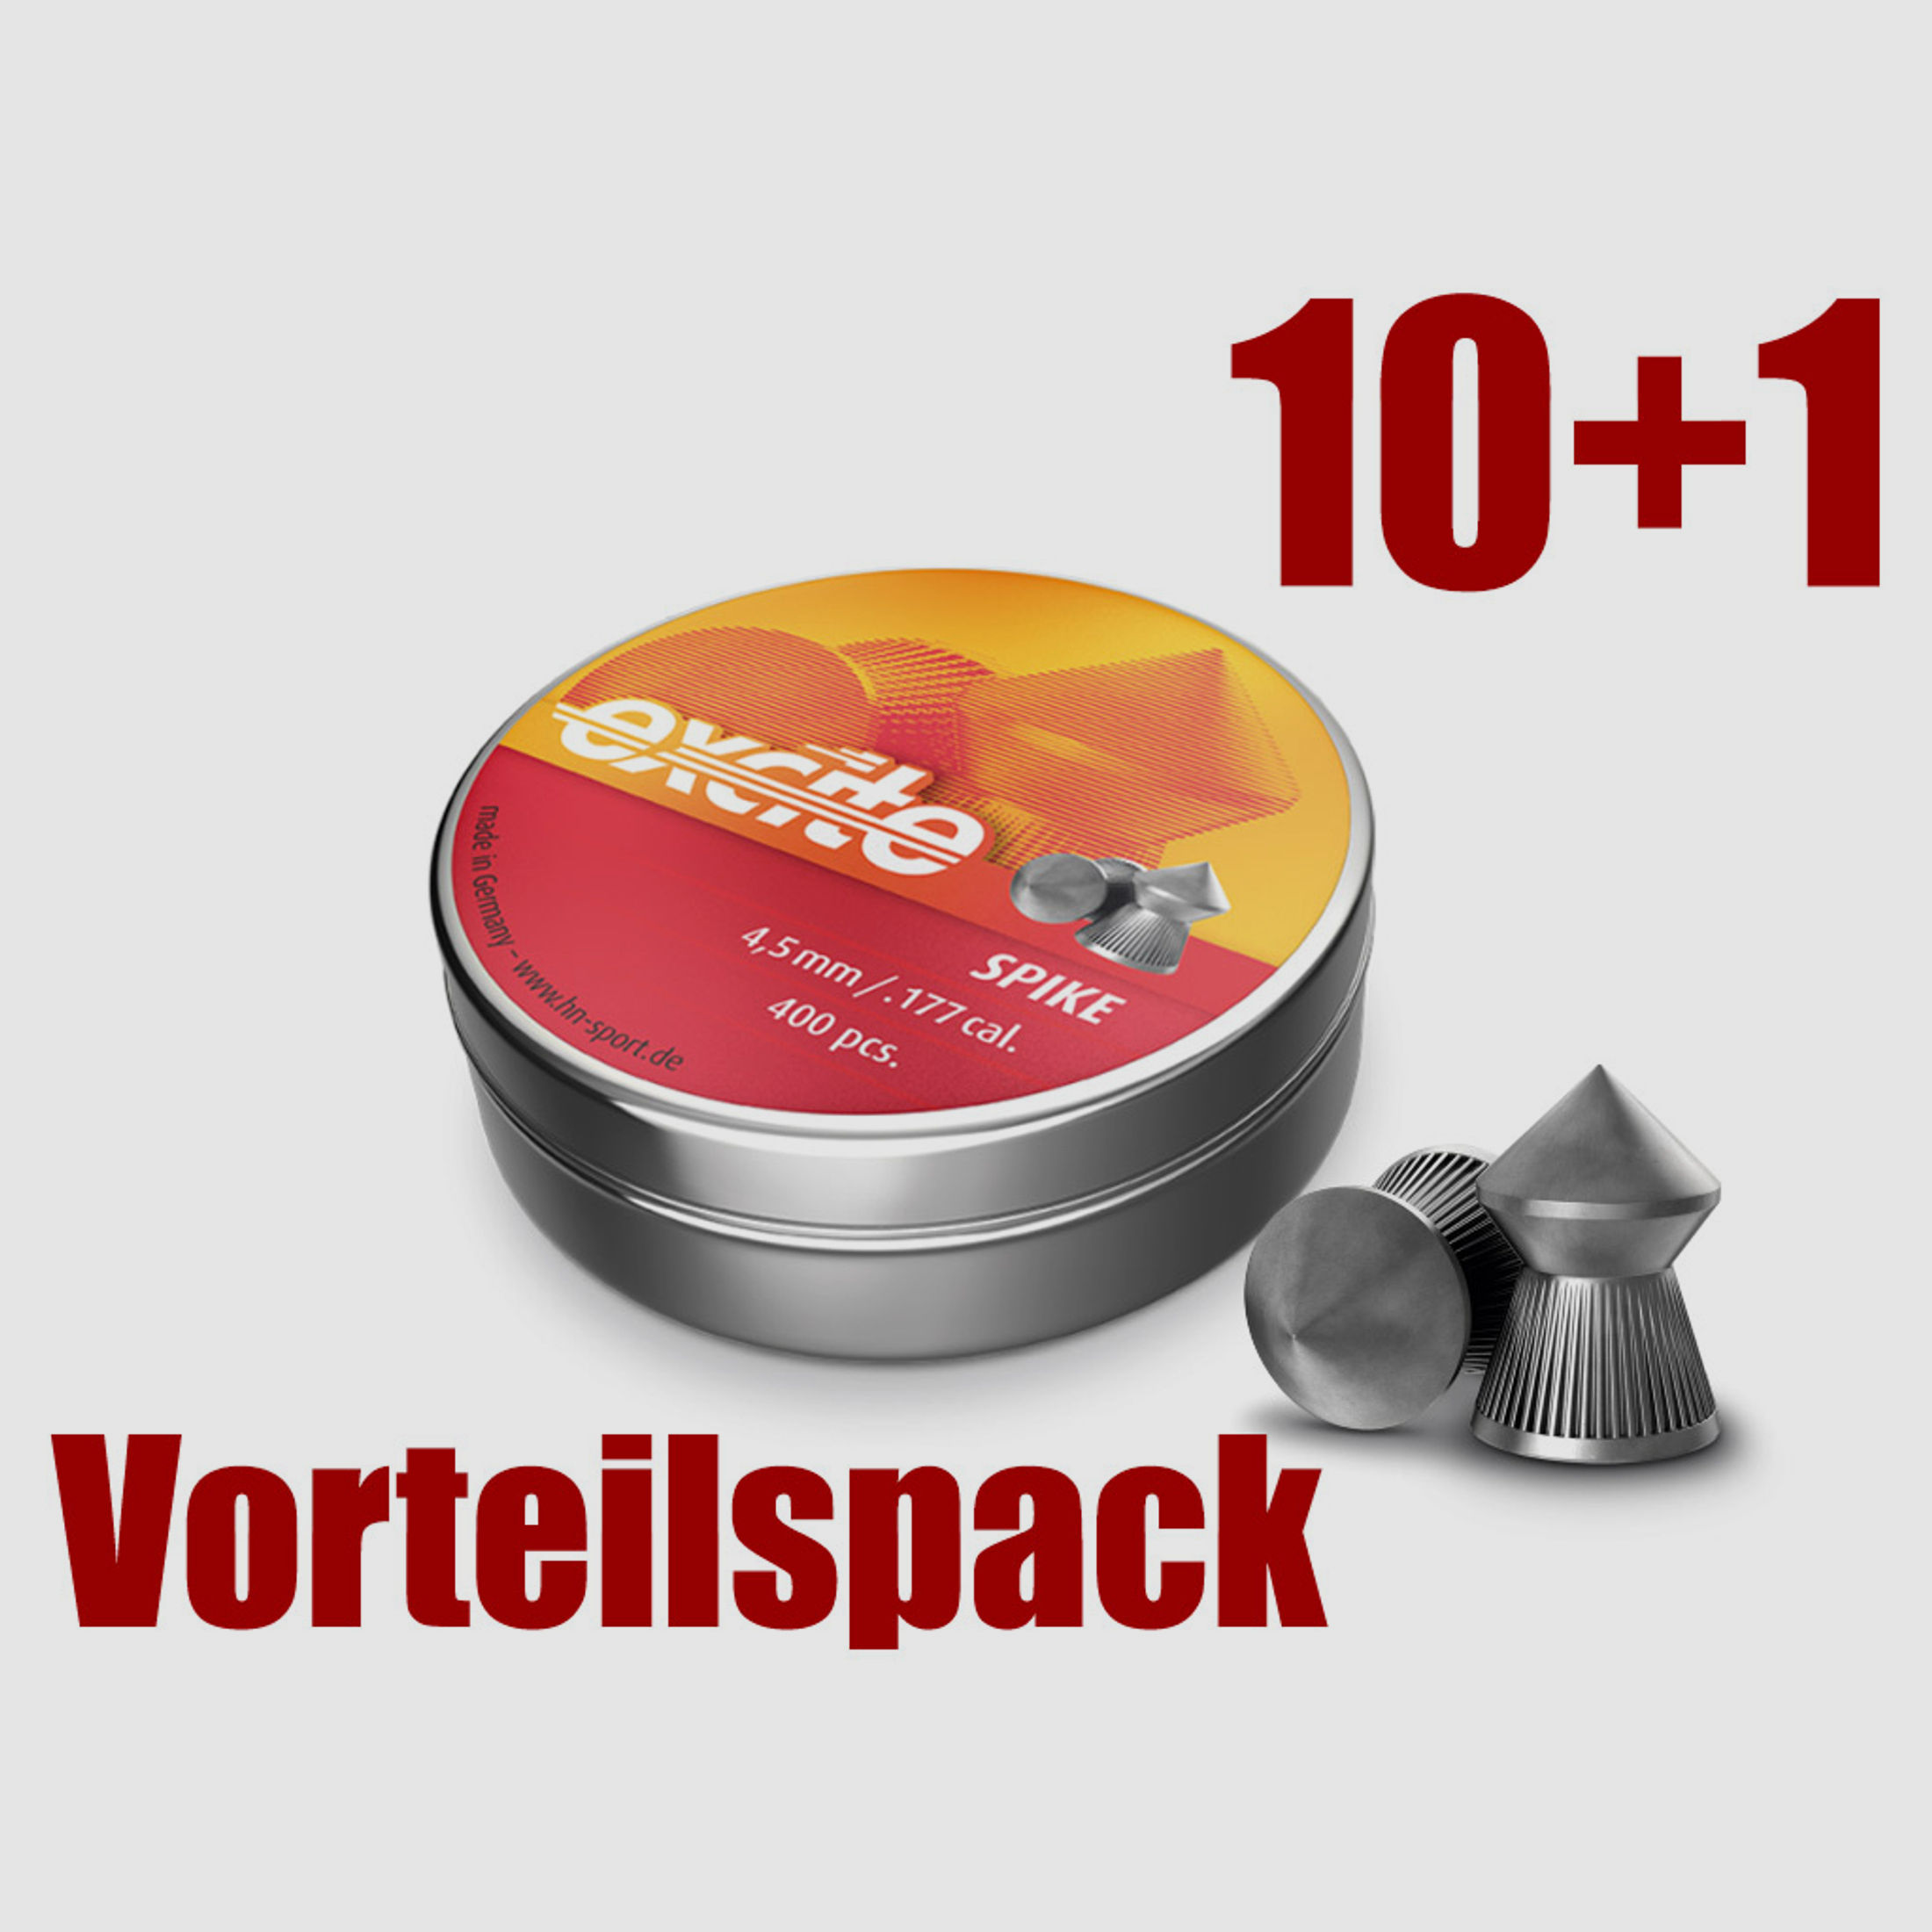 Vorteilspack 10+1 Spitzkopf Diabolos H&N Exite Spike Kaliber 4,5 mm 0,56 g geriffelt 11 x 400 StĂĽck